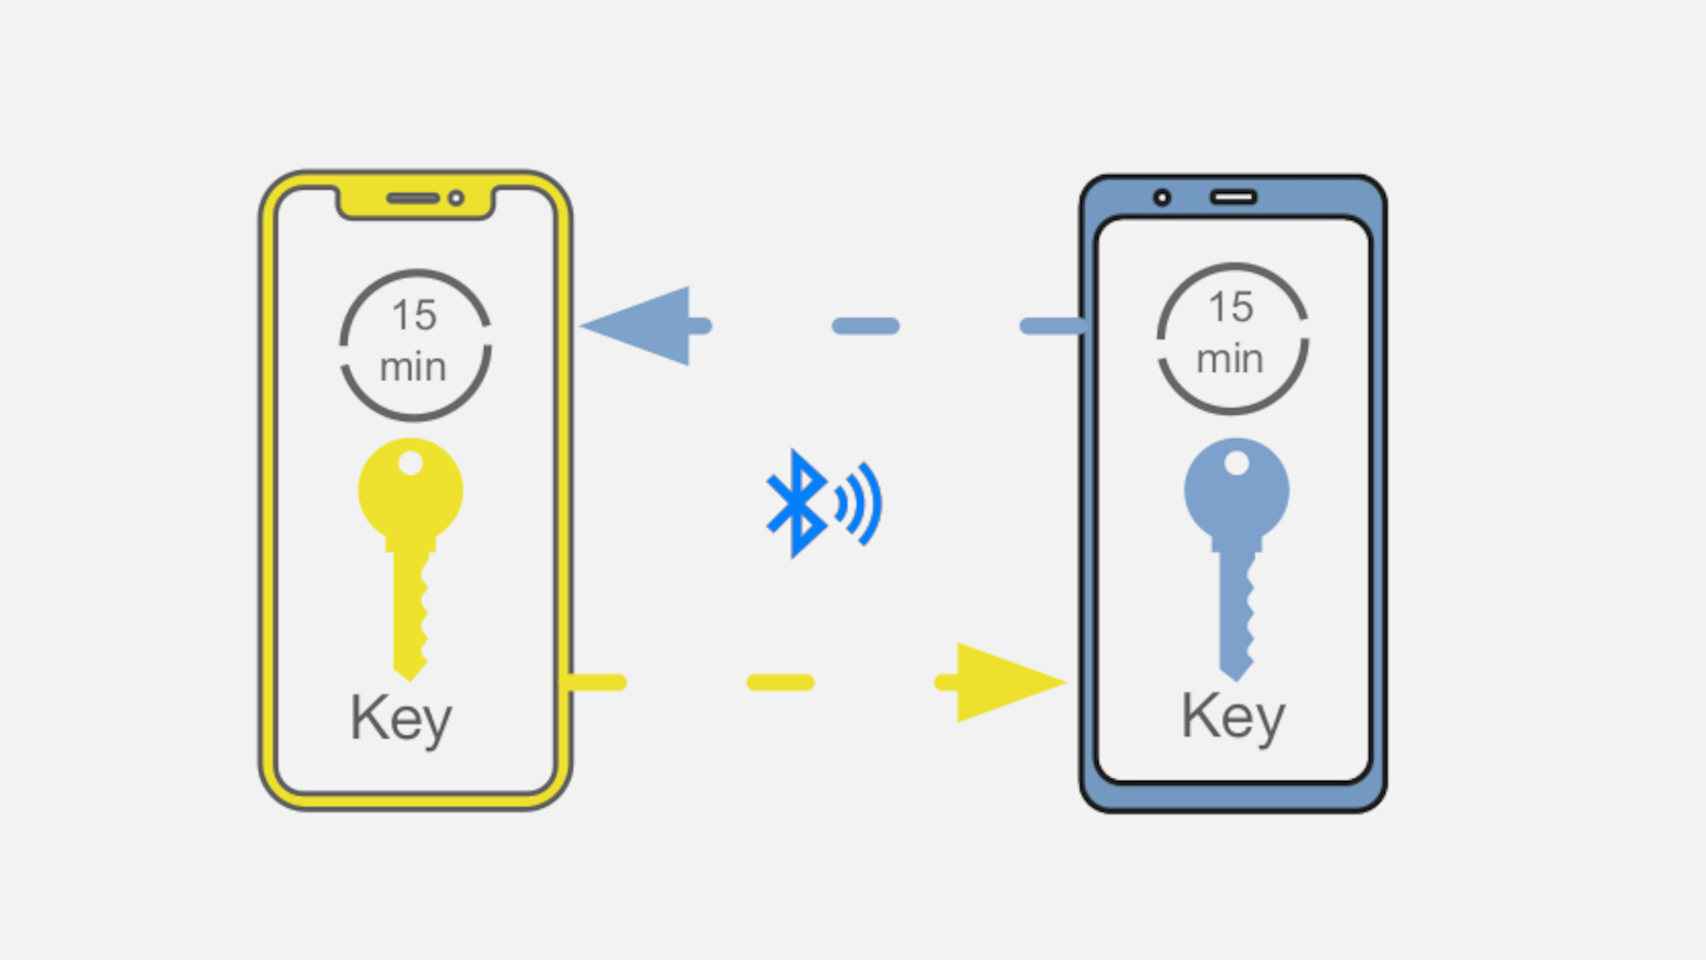 El sistema se basa en compartir claves por Bluetooth entre móviles